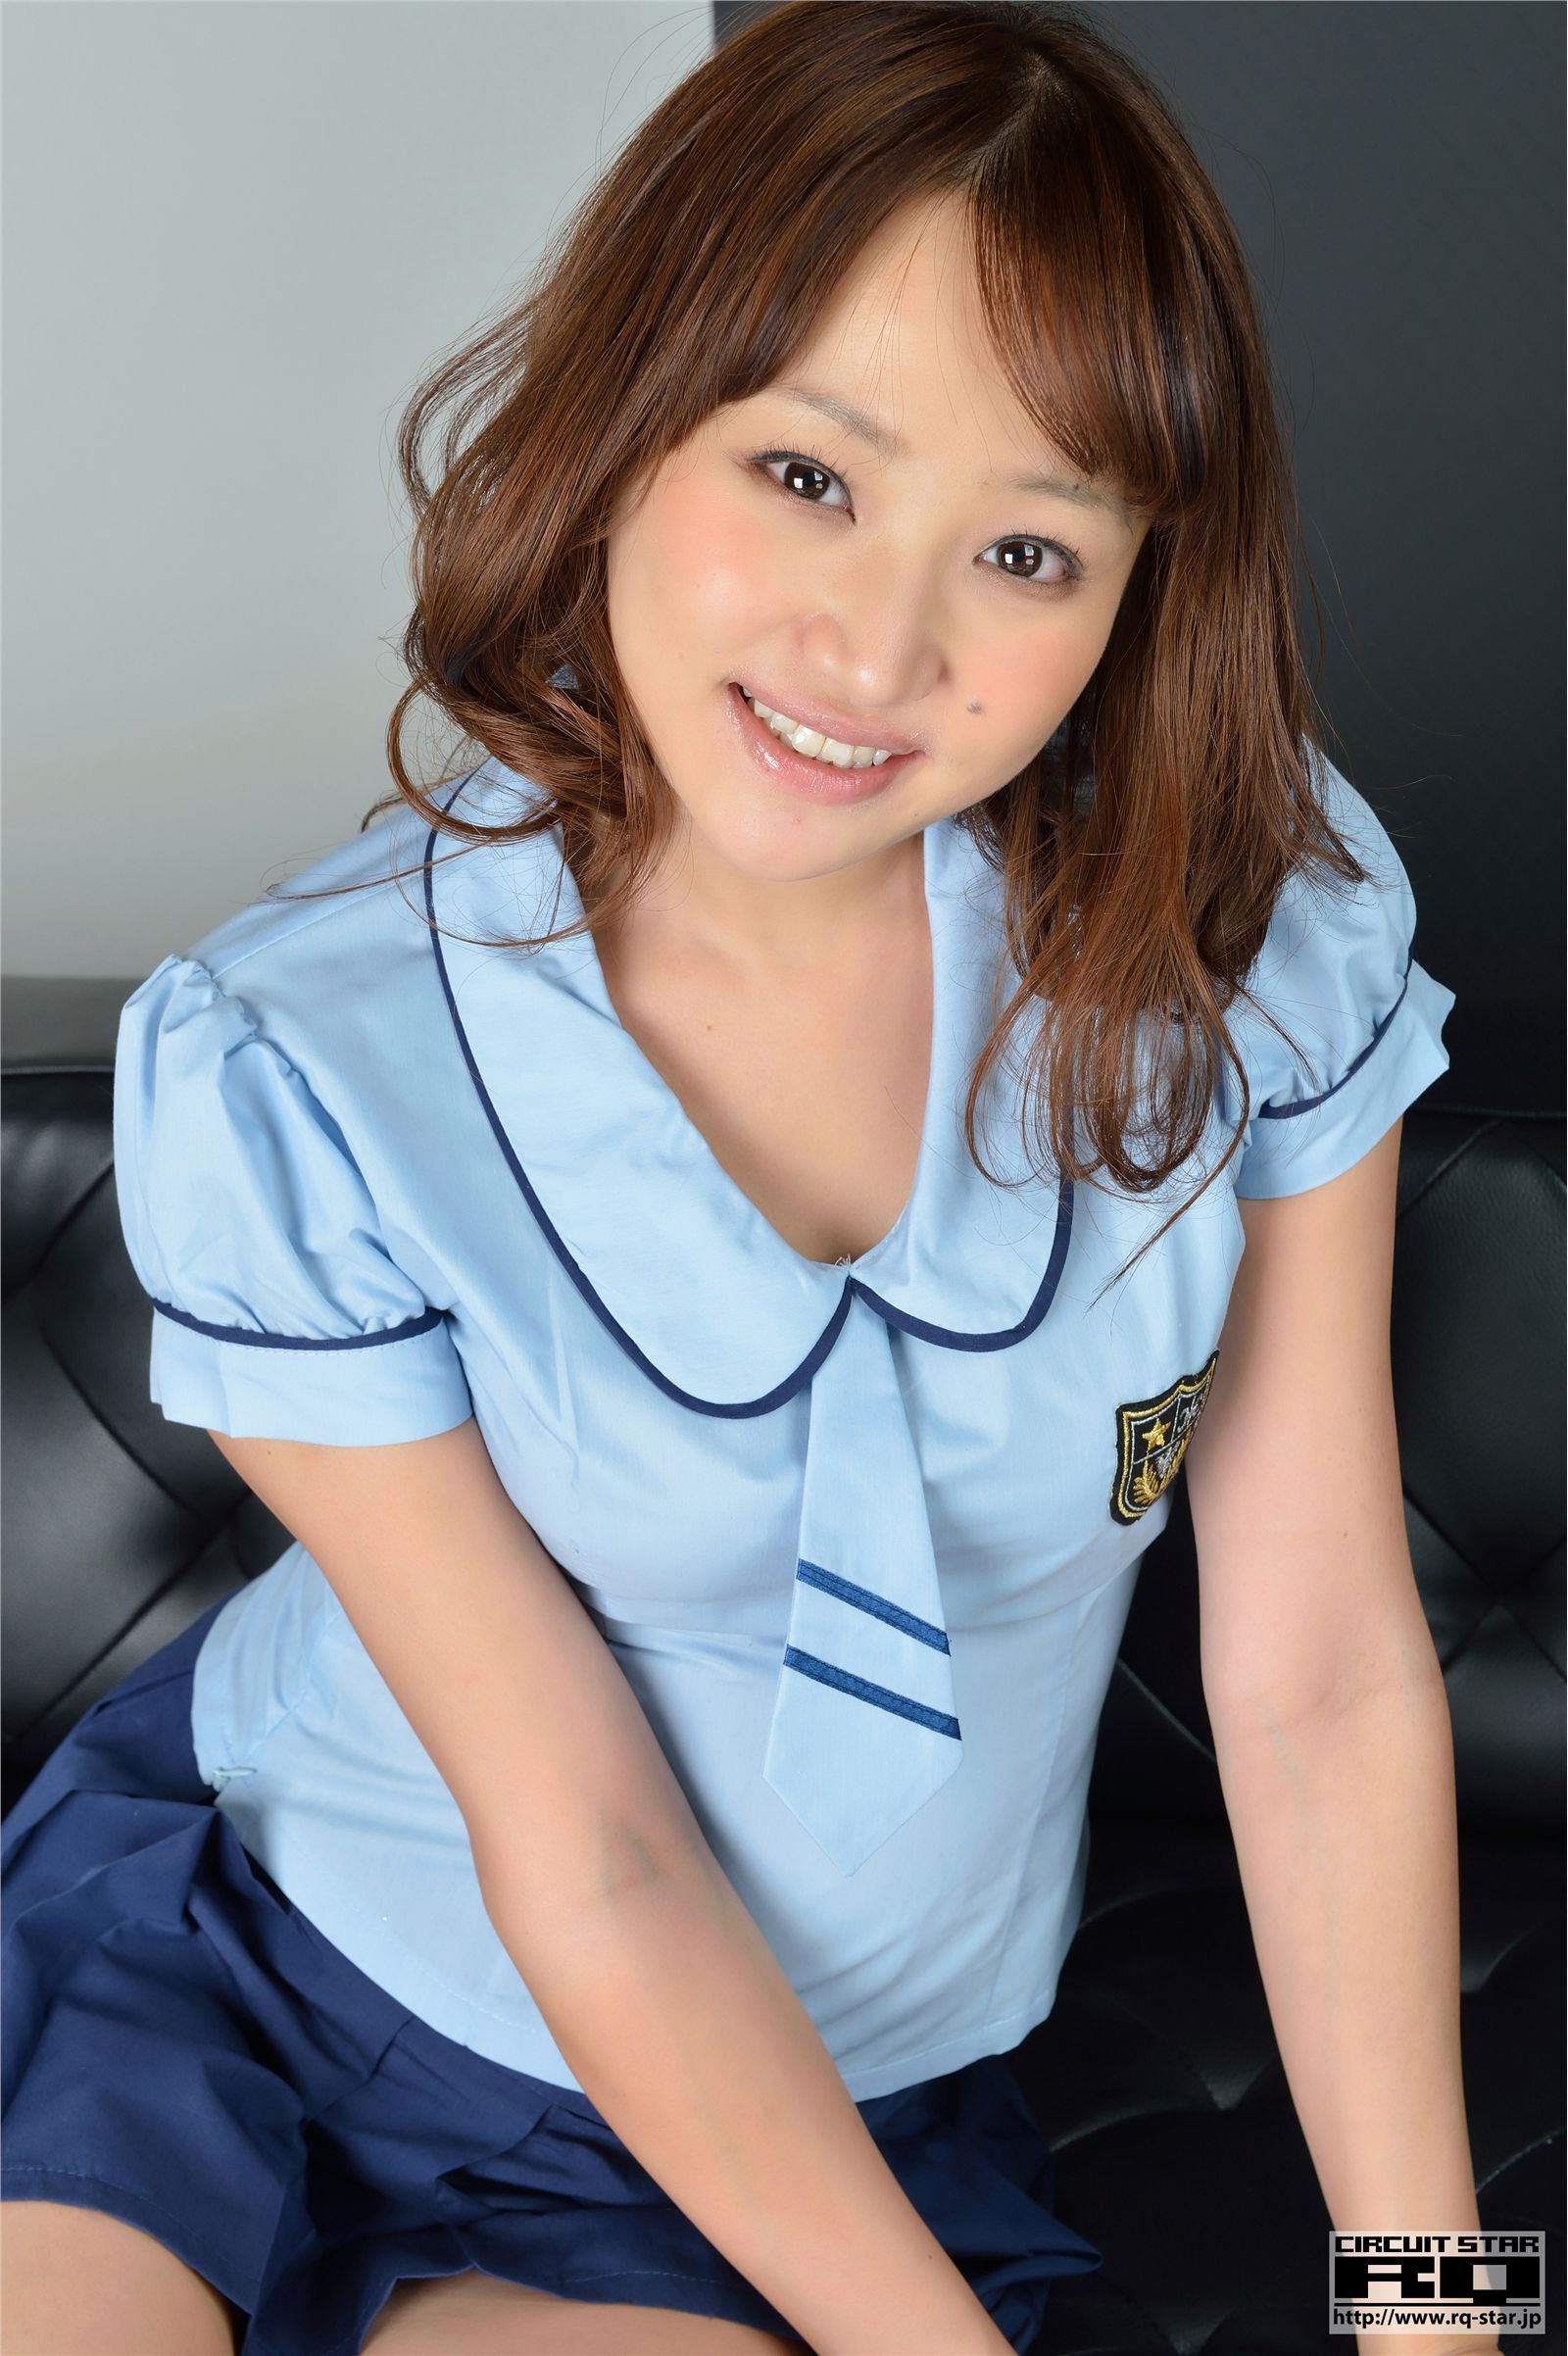 Japanese style uniform beauty woman